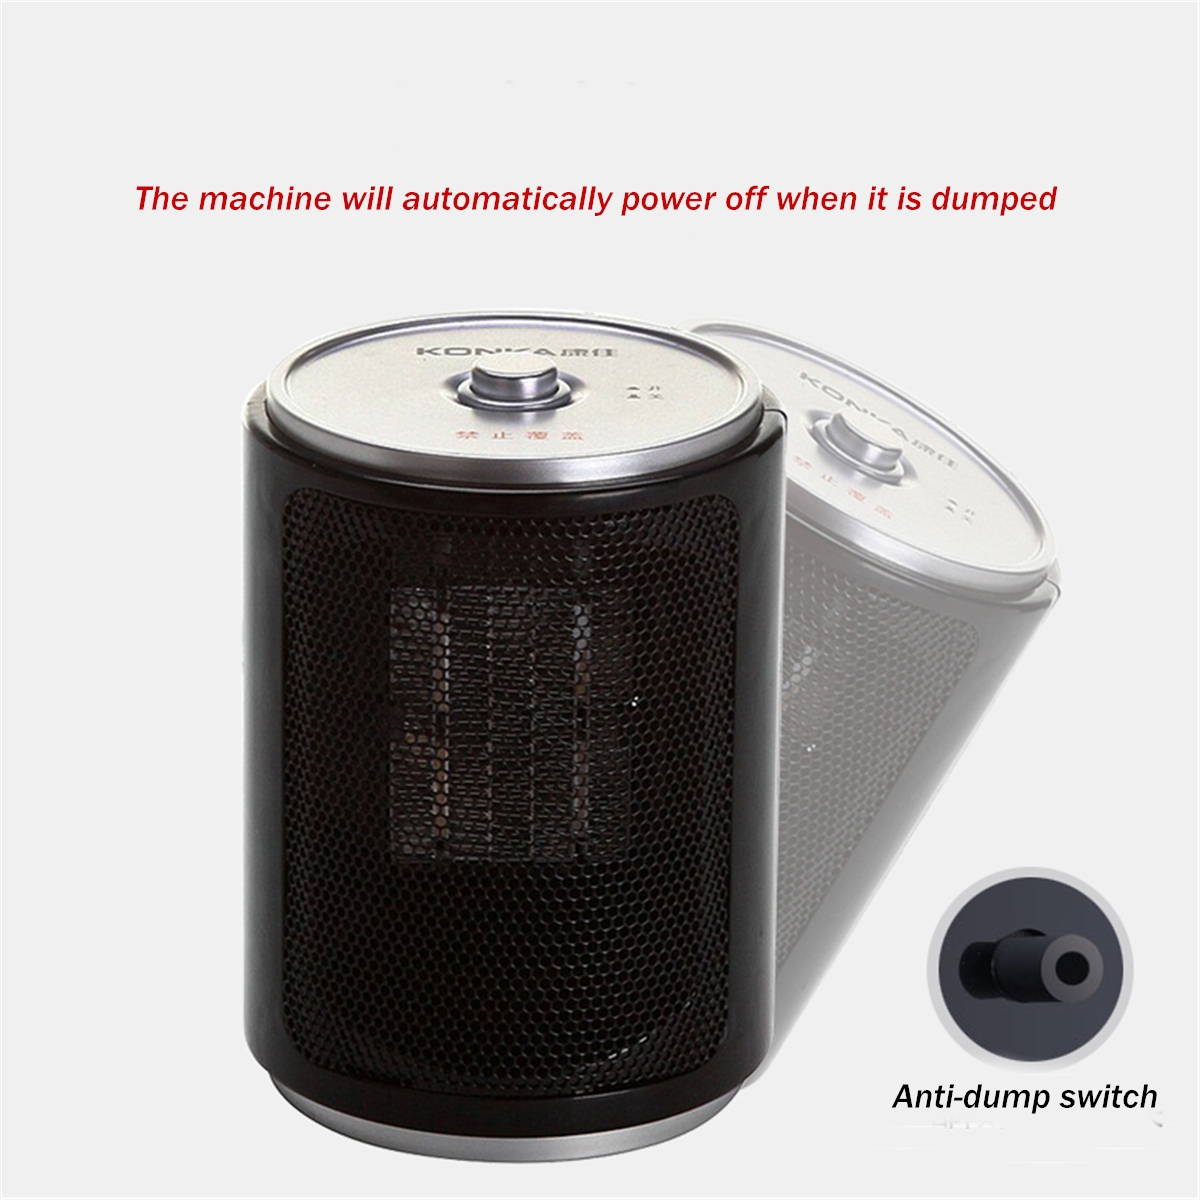 Portable-Electric-Desk-Mini-Air-Heater-Fan-Home-Warmer-Heating-Winter-Fan-1372394-3